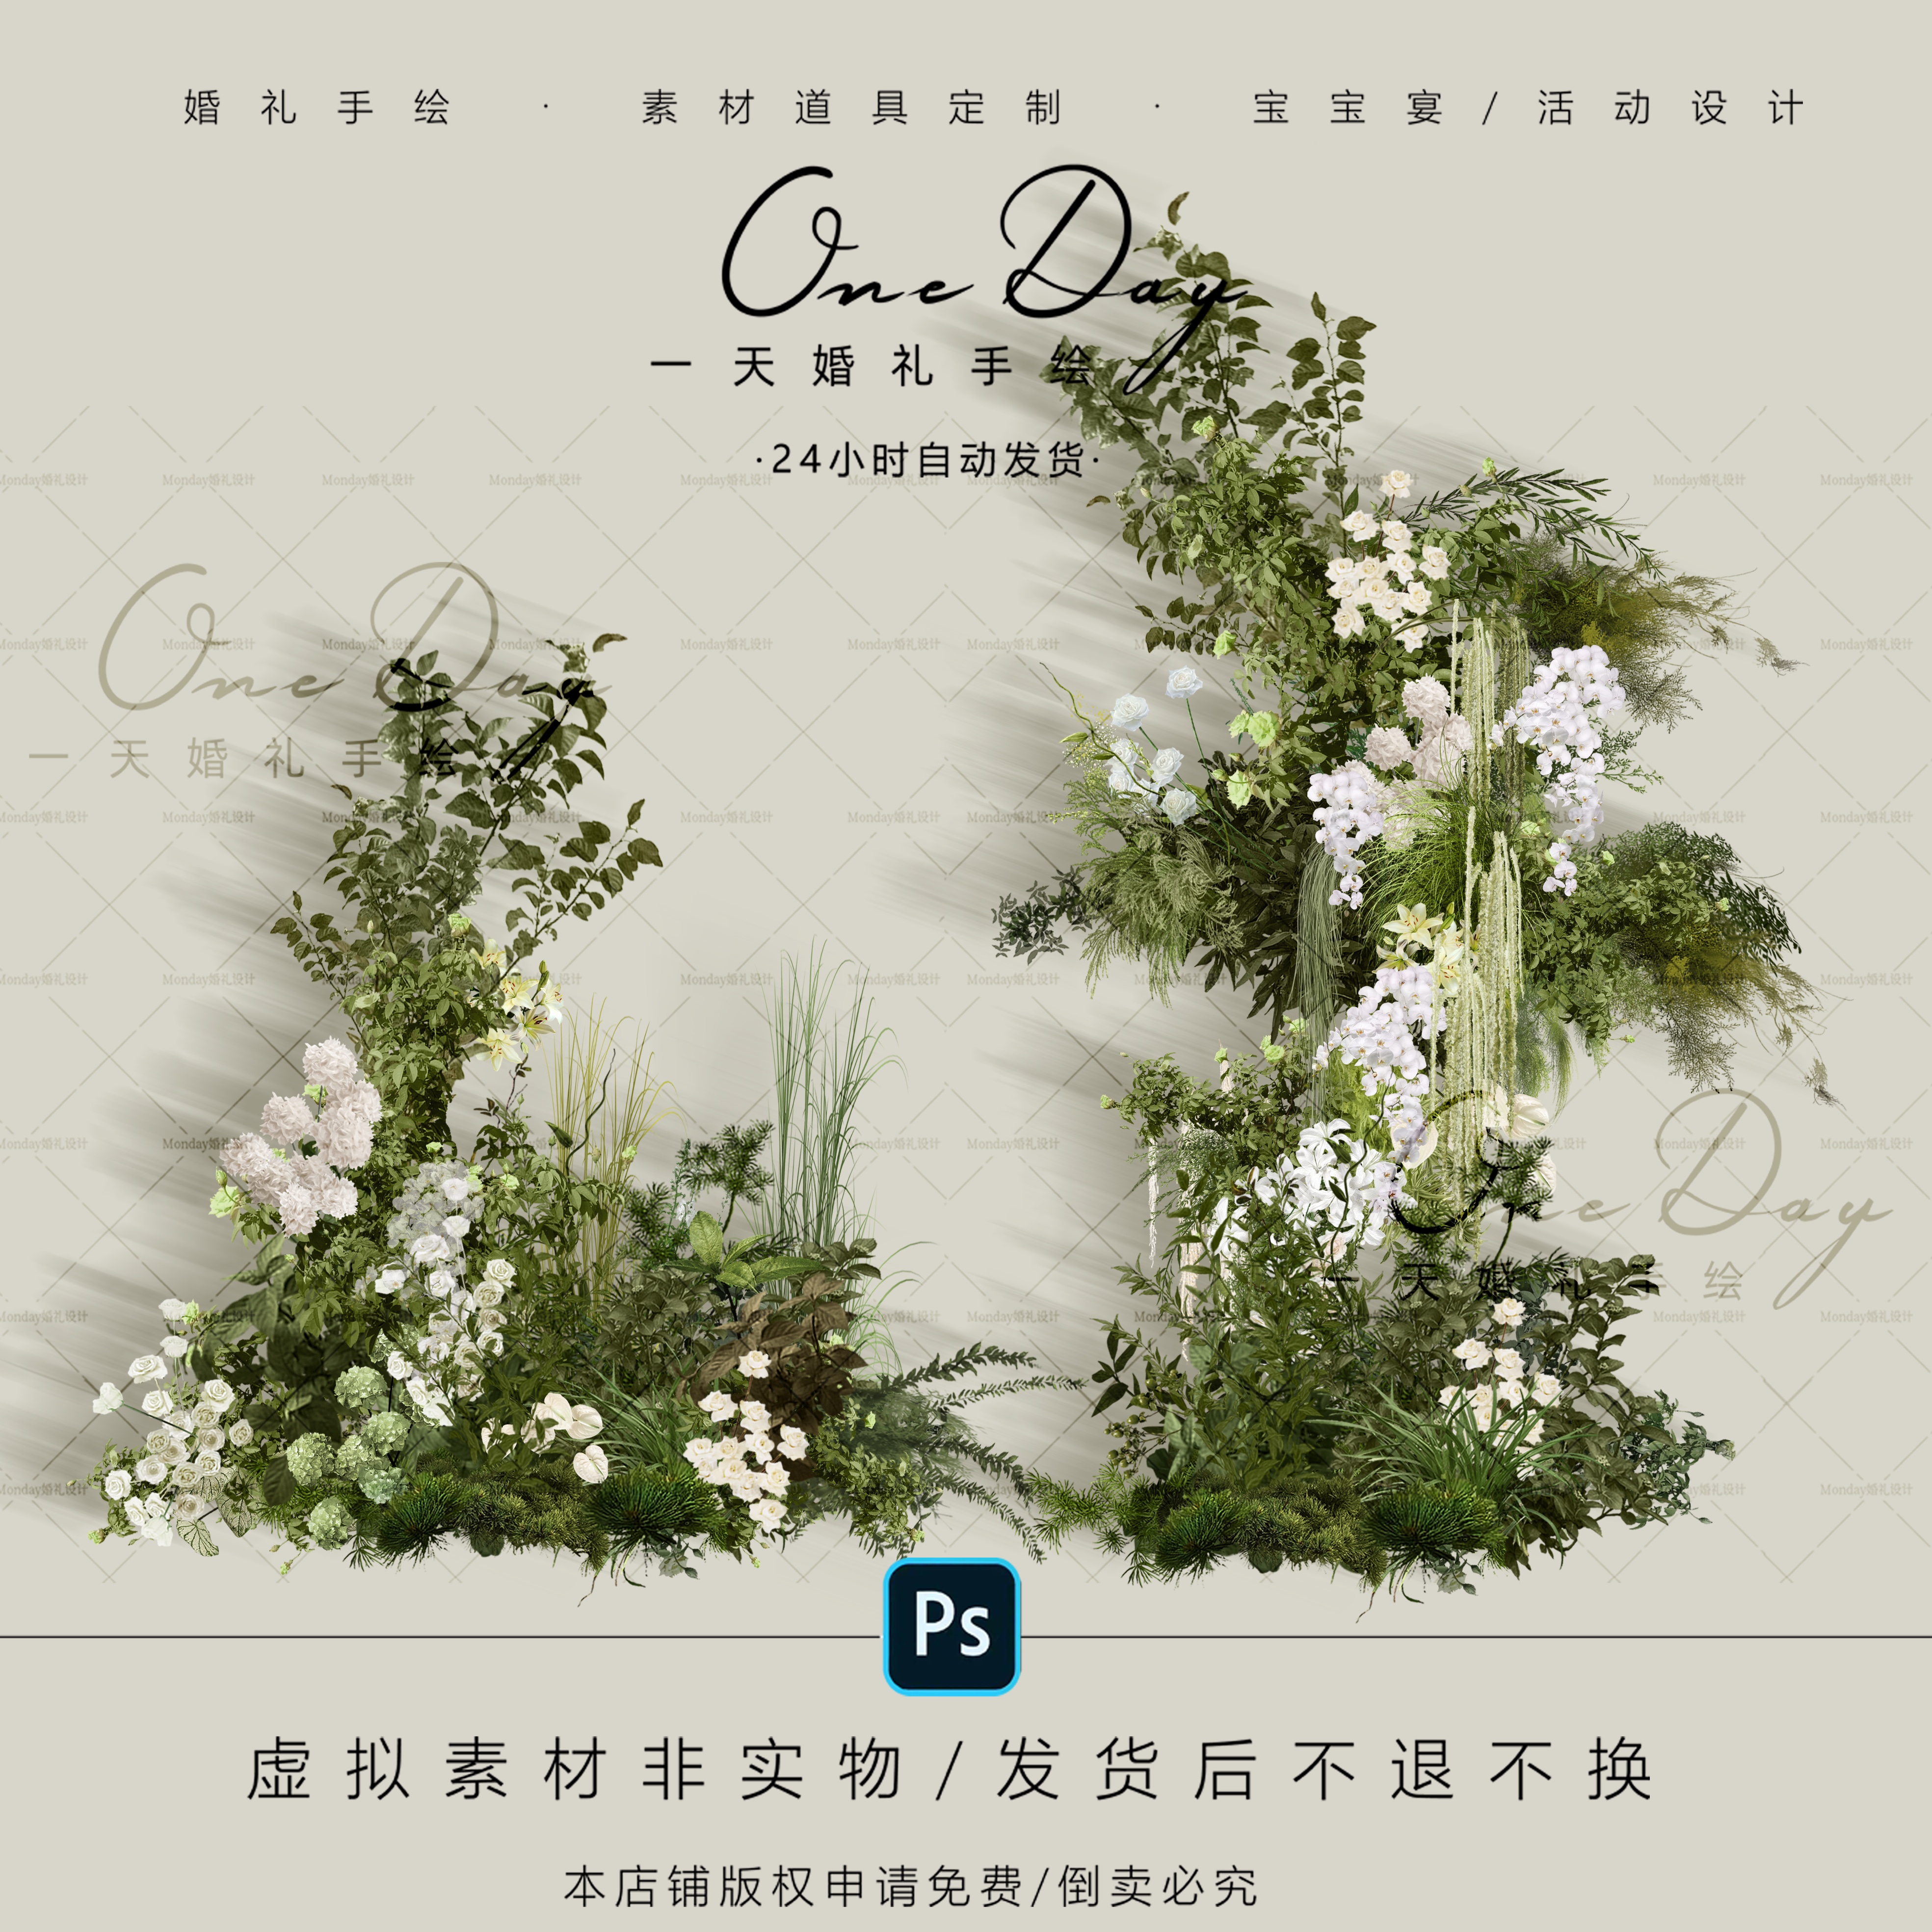 A052白绿色婚礼花艺素材ps源文件白绿森系韩式水晶婚礼效果图道具